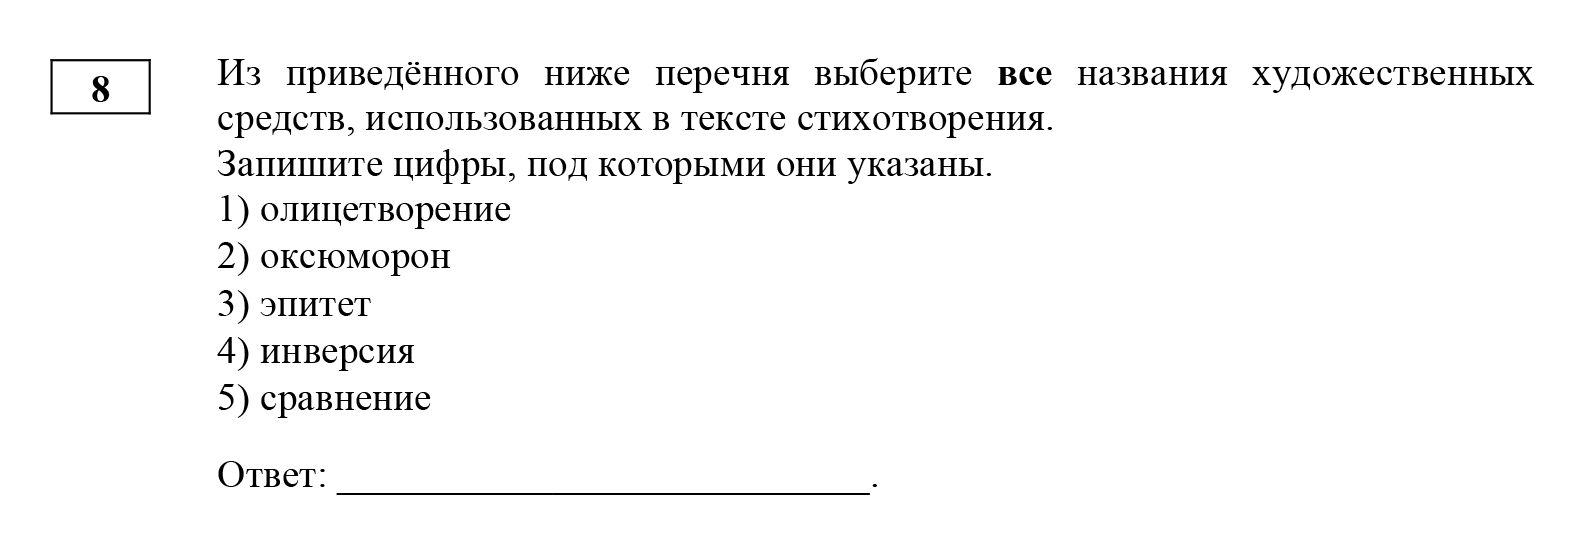 Задание базового уровня сложности № 8, которое оценивают в 1 балл. Источник: fipi.ru